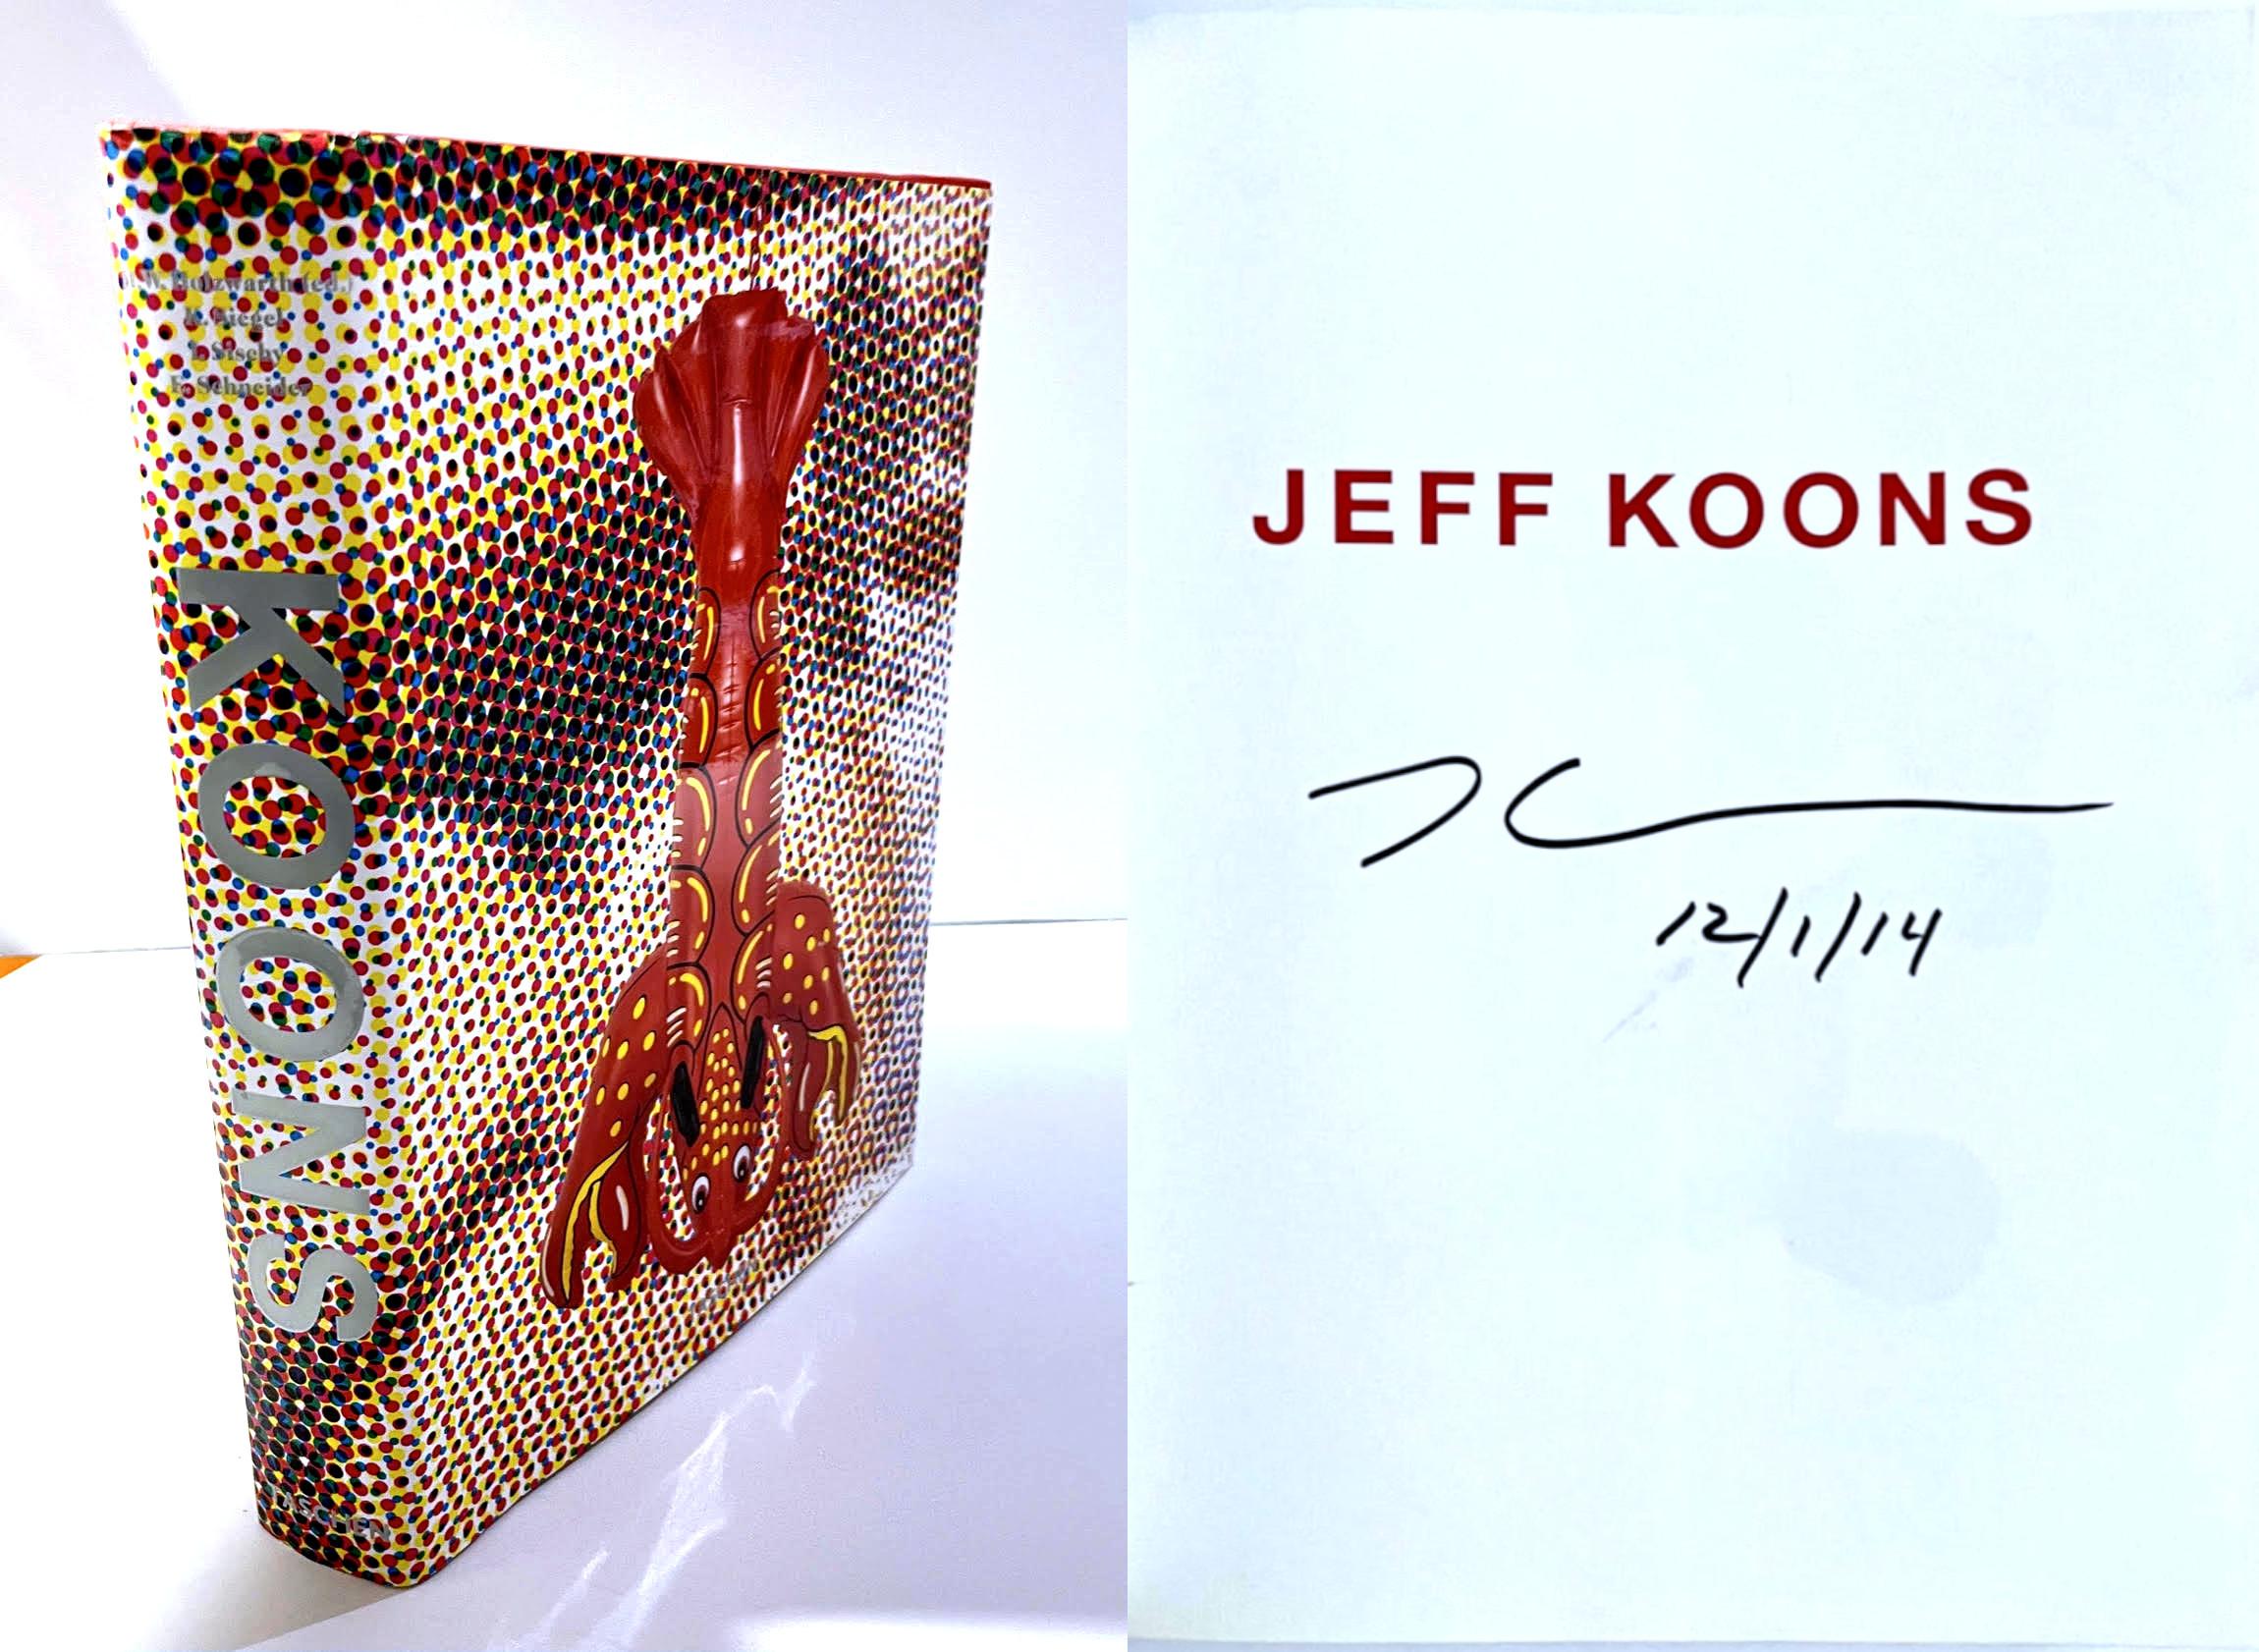 Jeff Koons
Monographie de 592 pages richement illustrée (signée par Jeff Koons), 2009
Monographie reliée avec jaquette (signée par Jeff Koons)
Signé et daté 12/1/14 sur la demi-page de titre.
13 1/2 × 10 × 2 pouces

Signé et daté 12/1/14 par Jeff